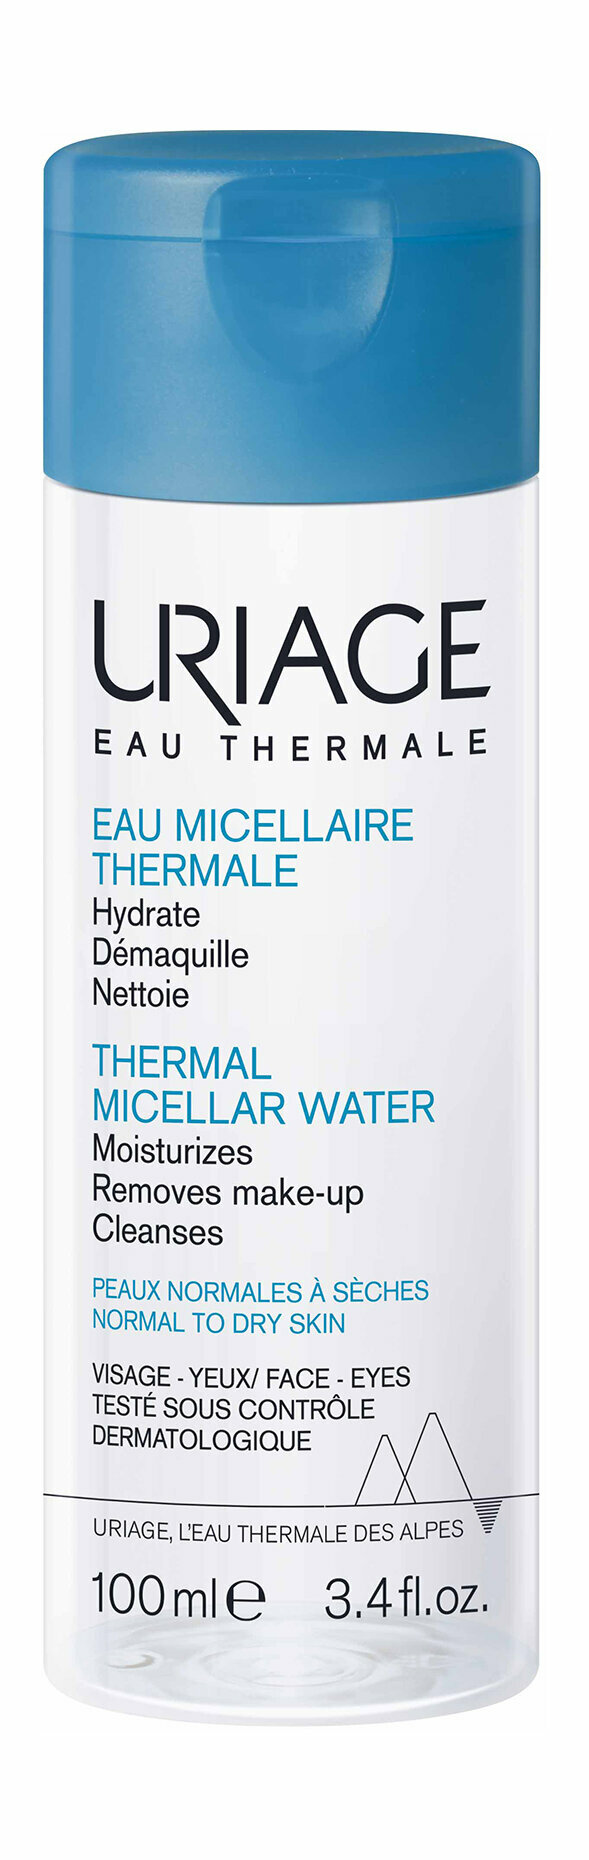 Вода Uriage Eau Thermale Eau Thermal Micellar Water, Очищающая мицеллярная вода, Для сухой и нормальной кожи, 100 мл